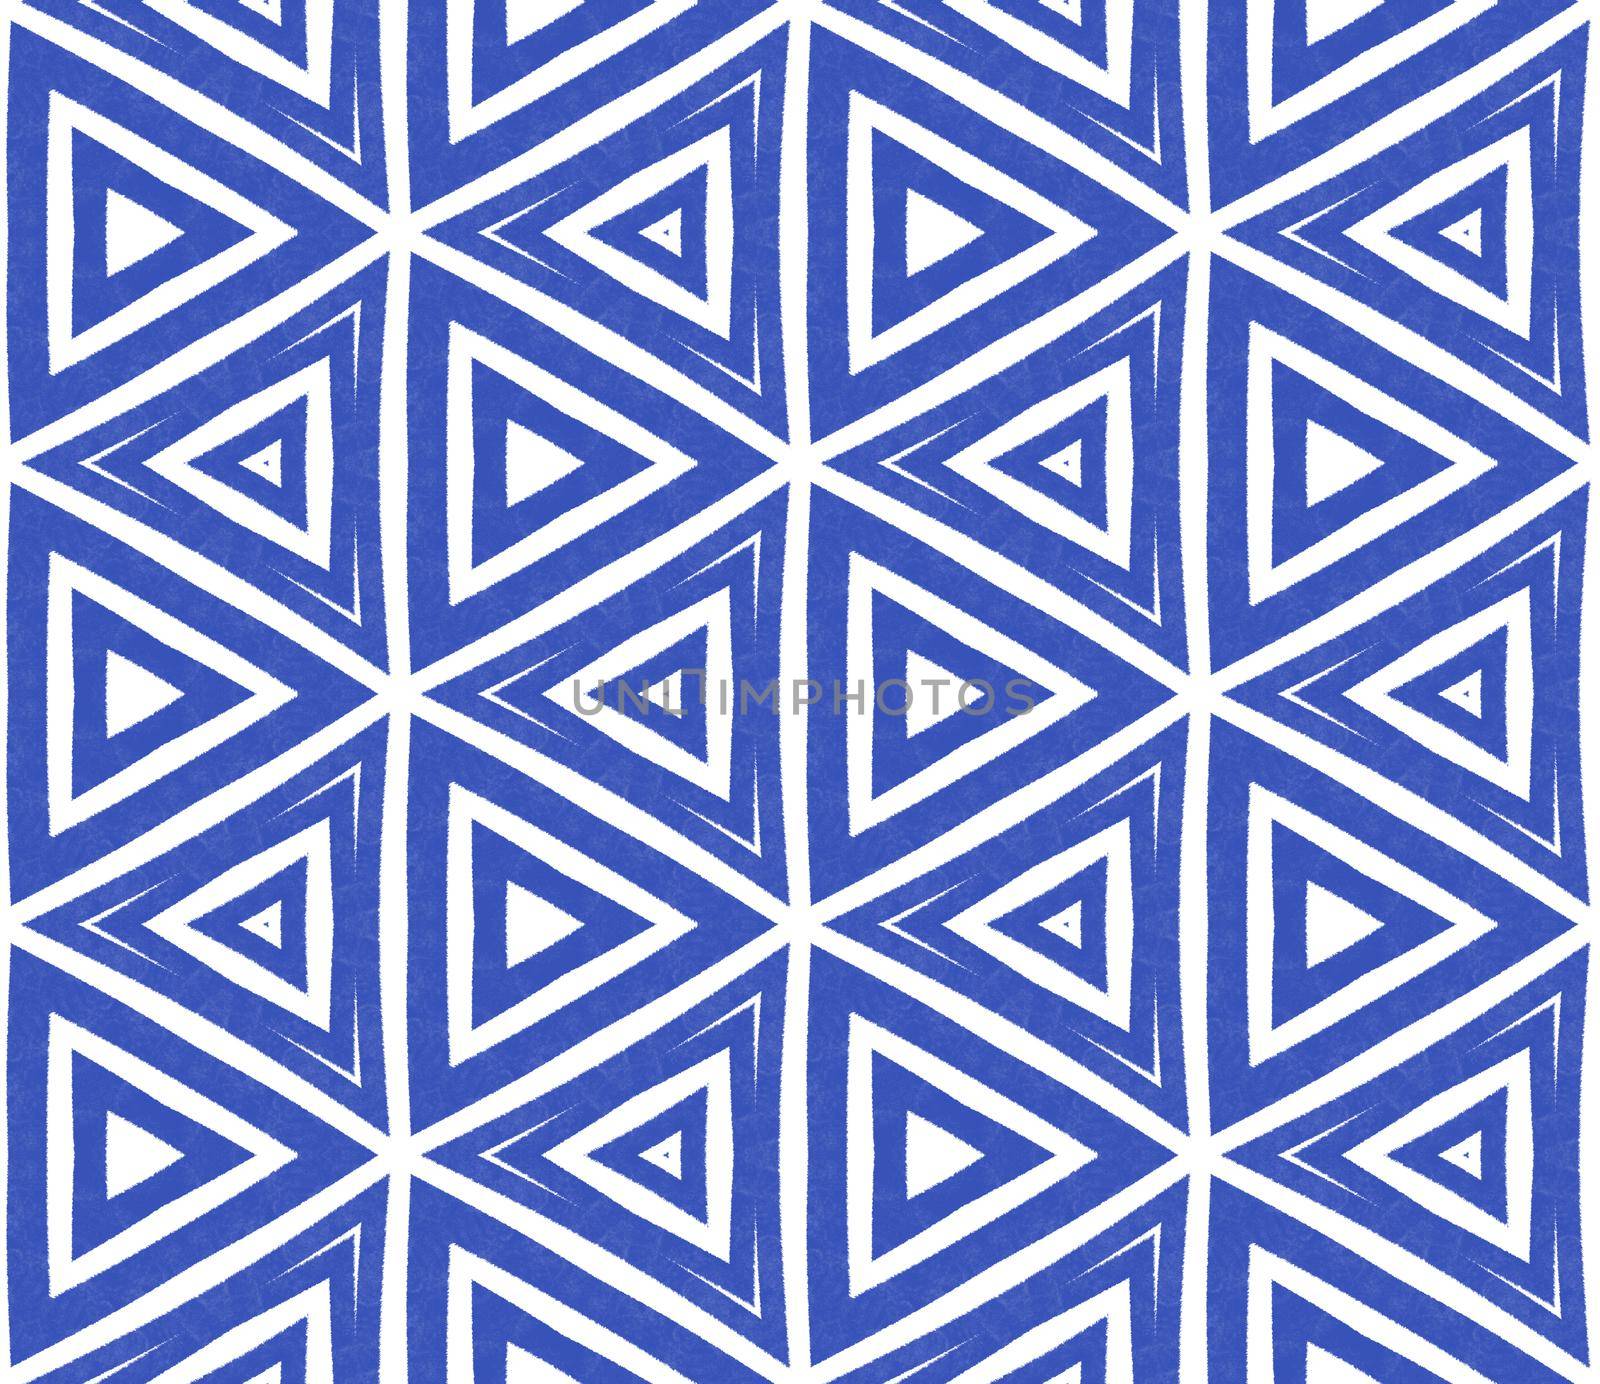 Striped hand drawn pattern. Indigo symmetrical by beginagain